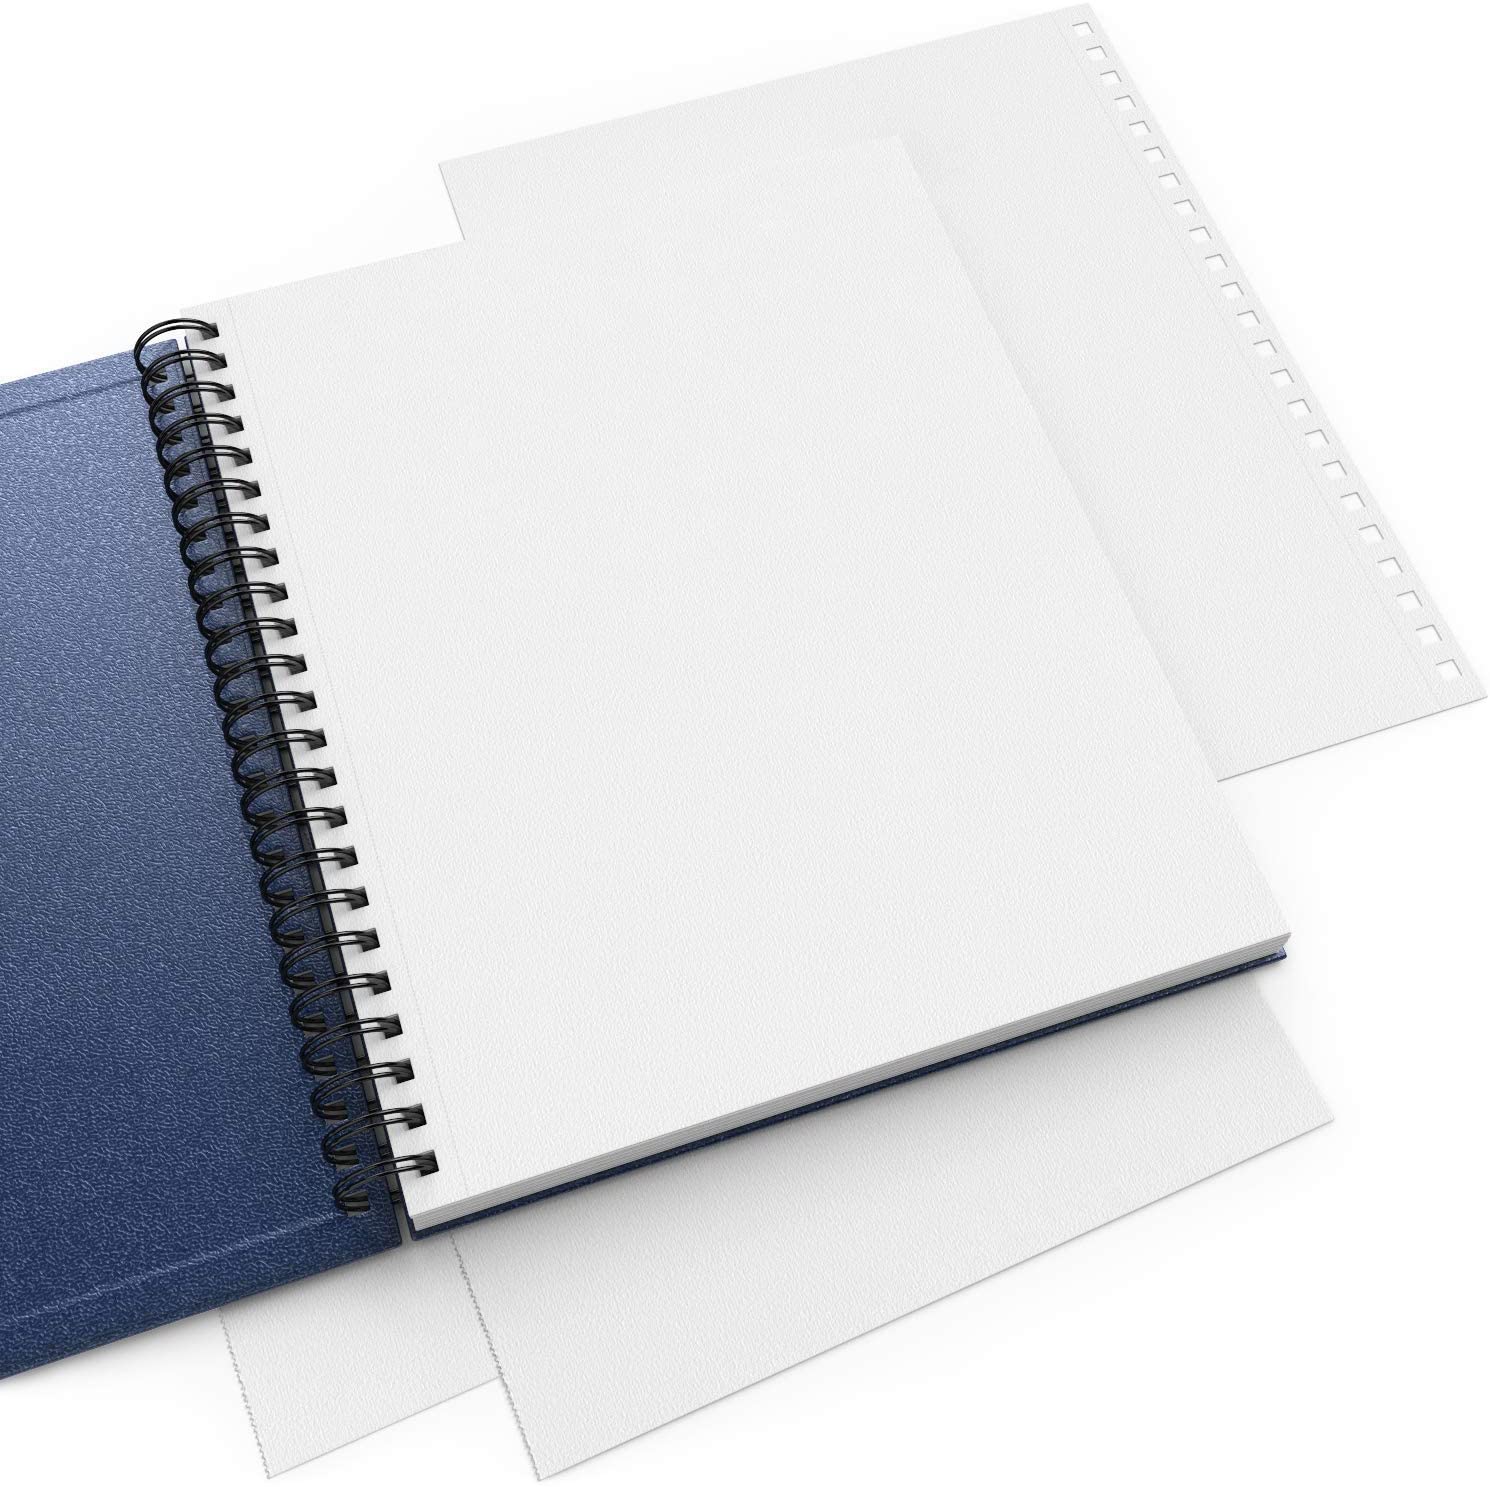 Coverless Paperback, Sketchbook or Notebook — Lotus Blu Book Art